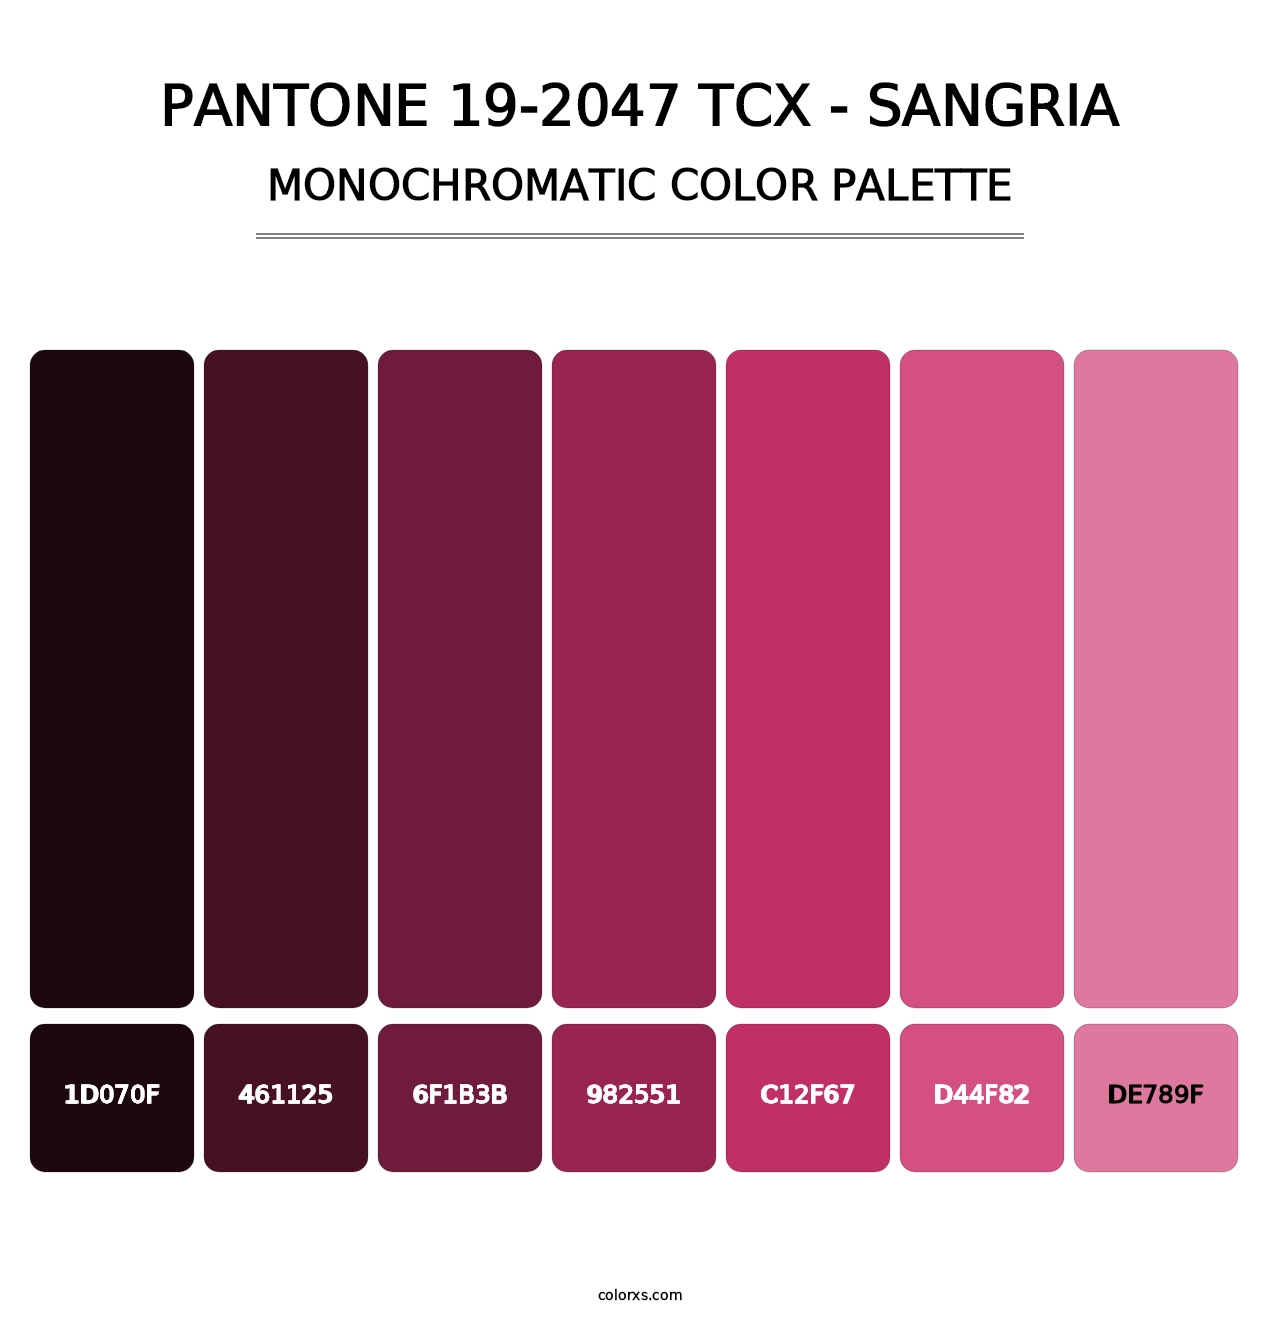 PANTONE 19-2047 TCX - Sangria - Monochromatic Color Palette